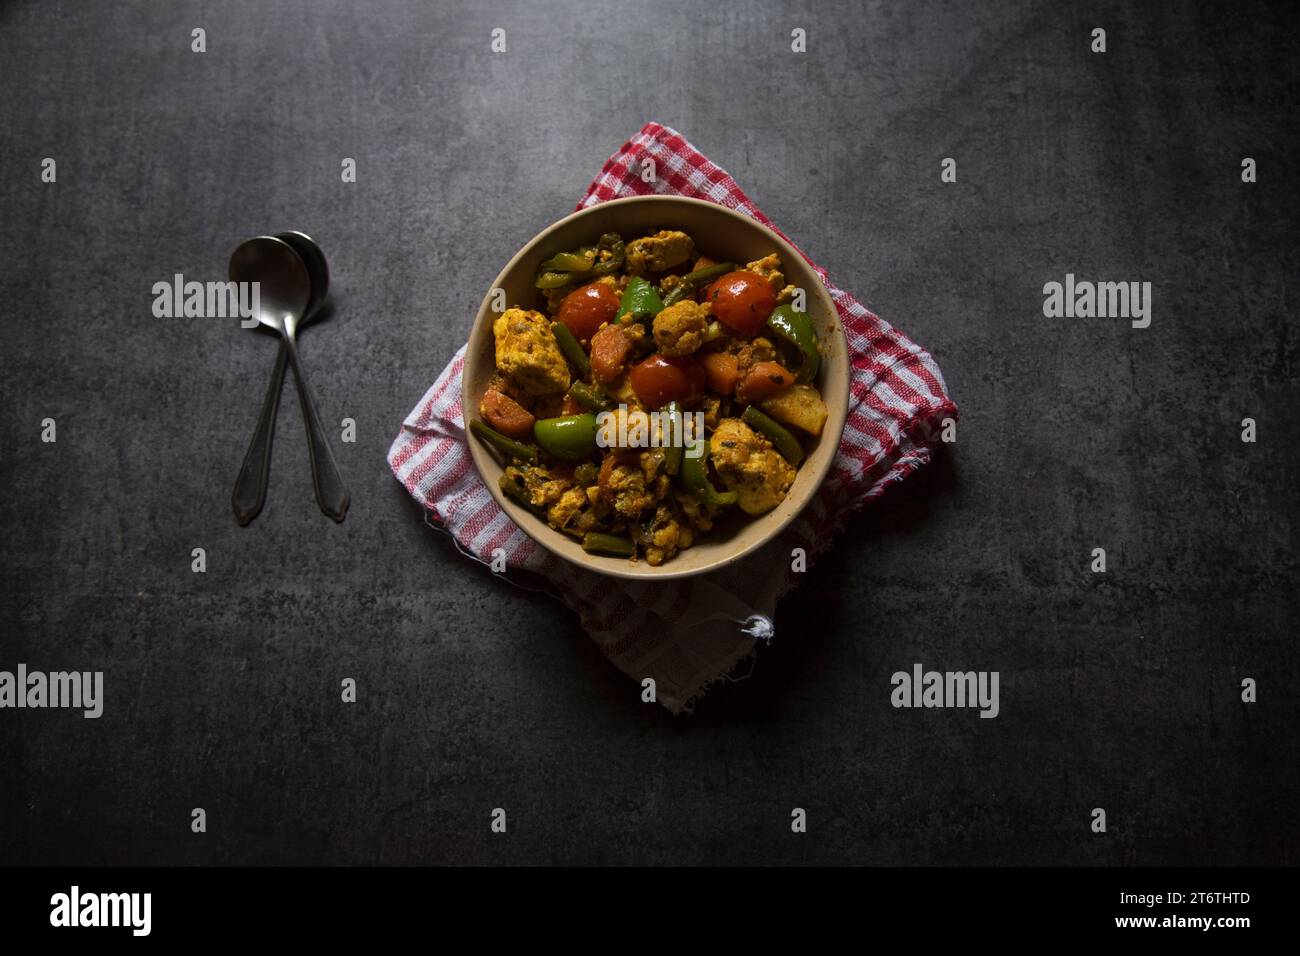 Piatto principale indiano curry misto di verdure preparato con carote, cavolfiore, fagioli, capsicum e paneer o formaggio cottage servito in un recipiente. Vista dall'alto Foto Stock